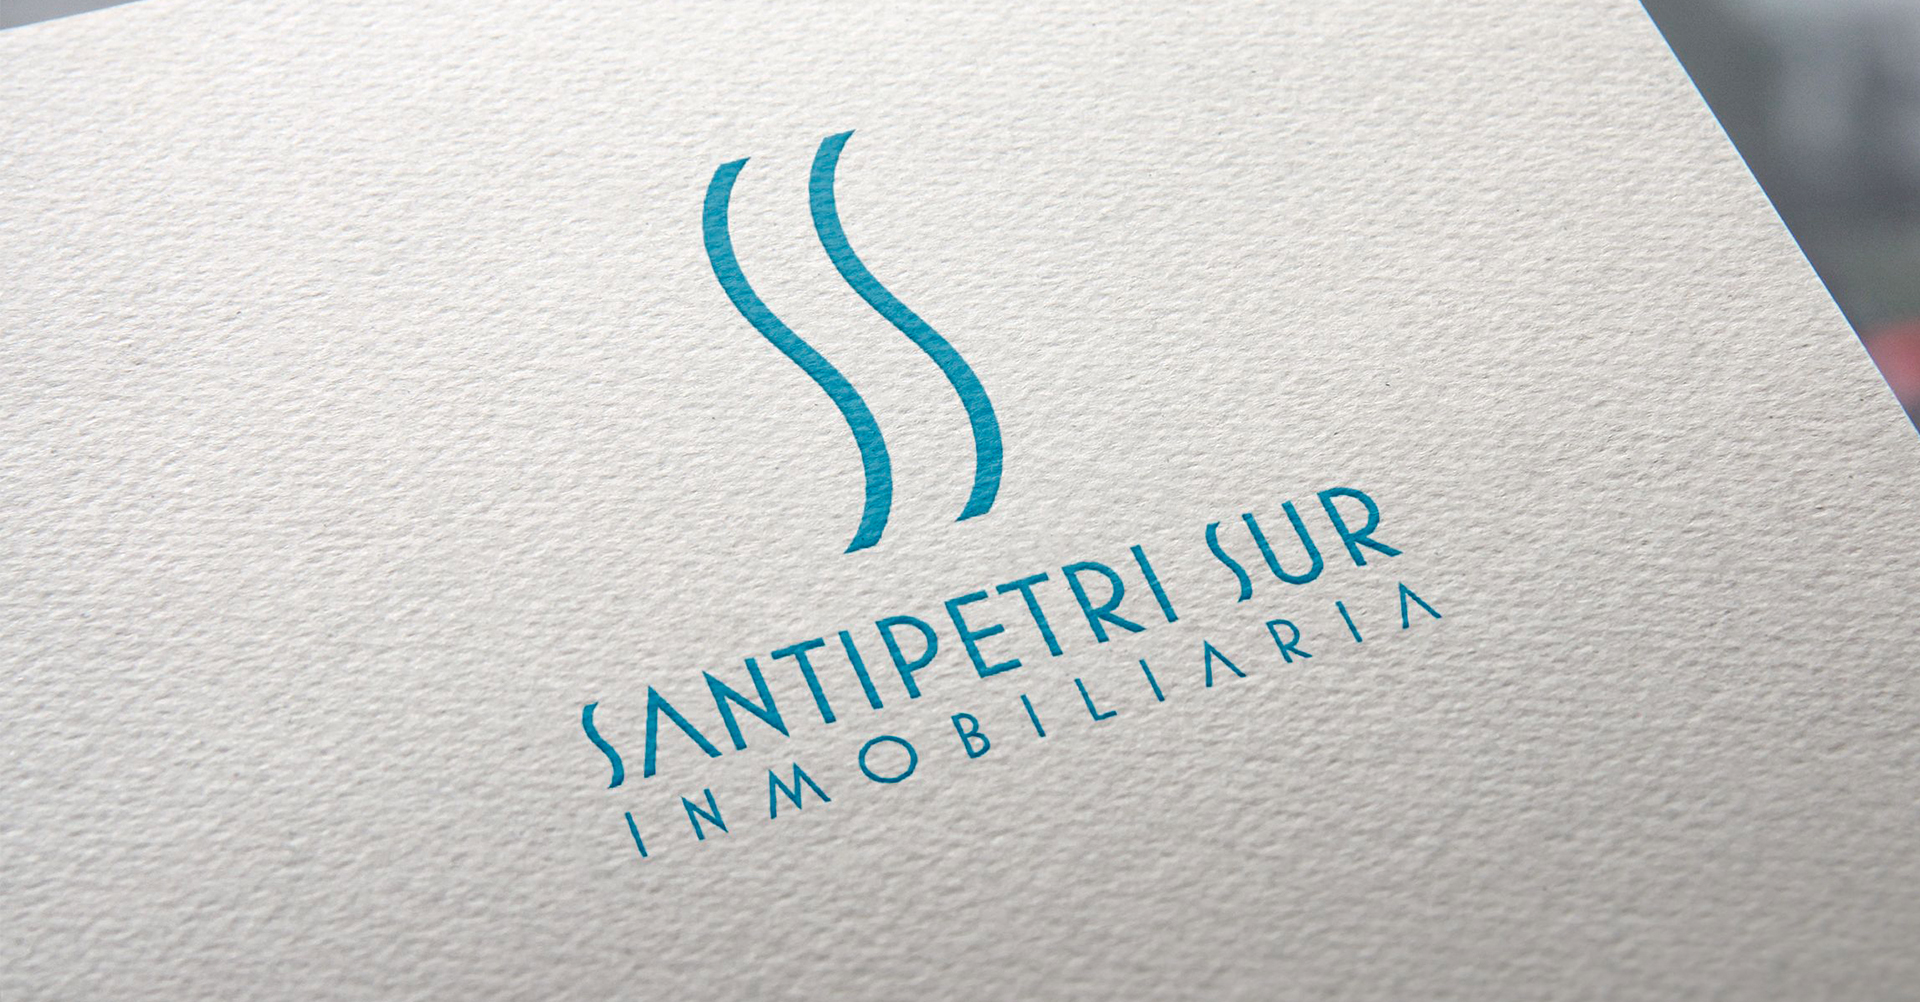 SanctipetriSur Inmobiliaria - Carpetas